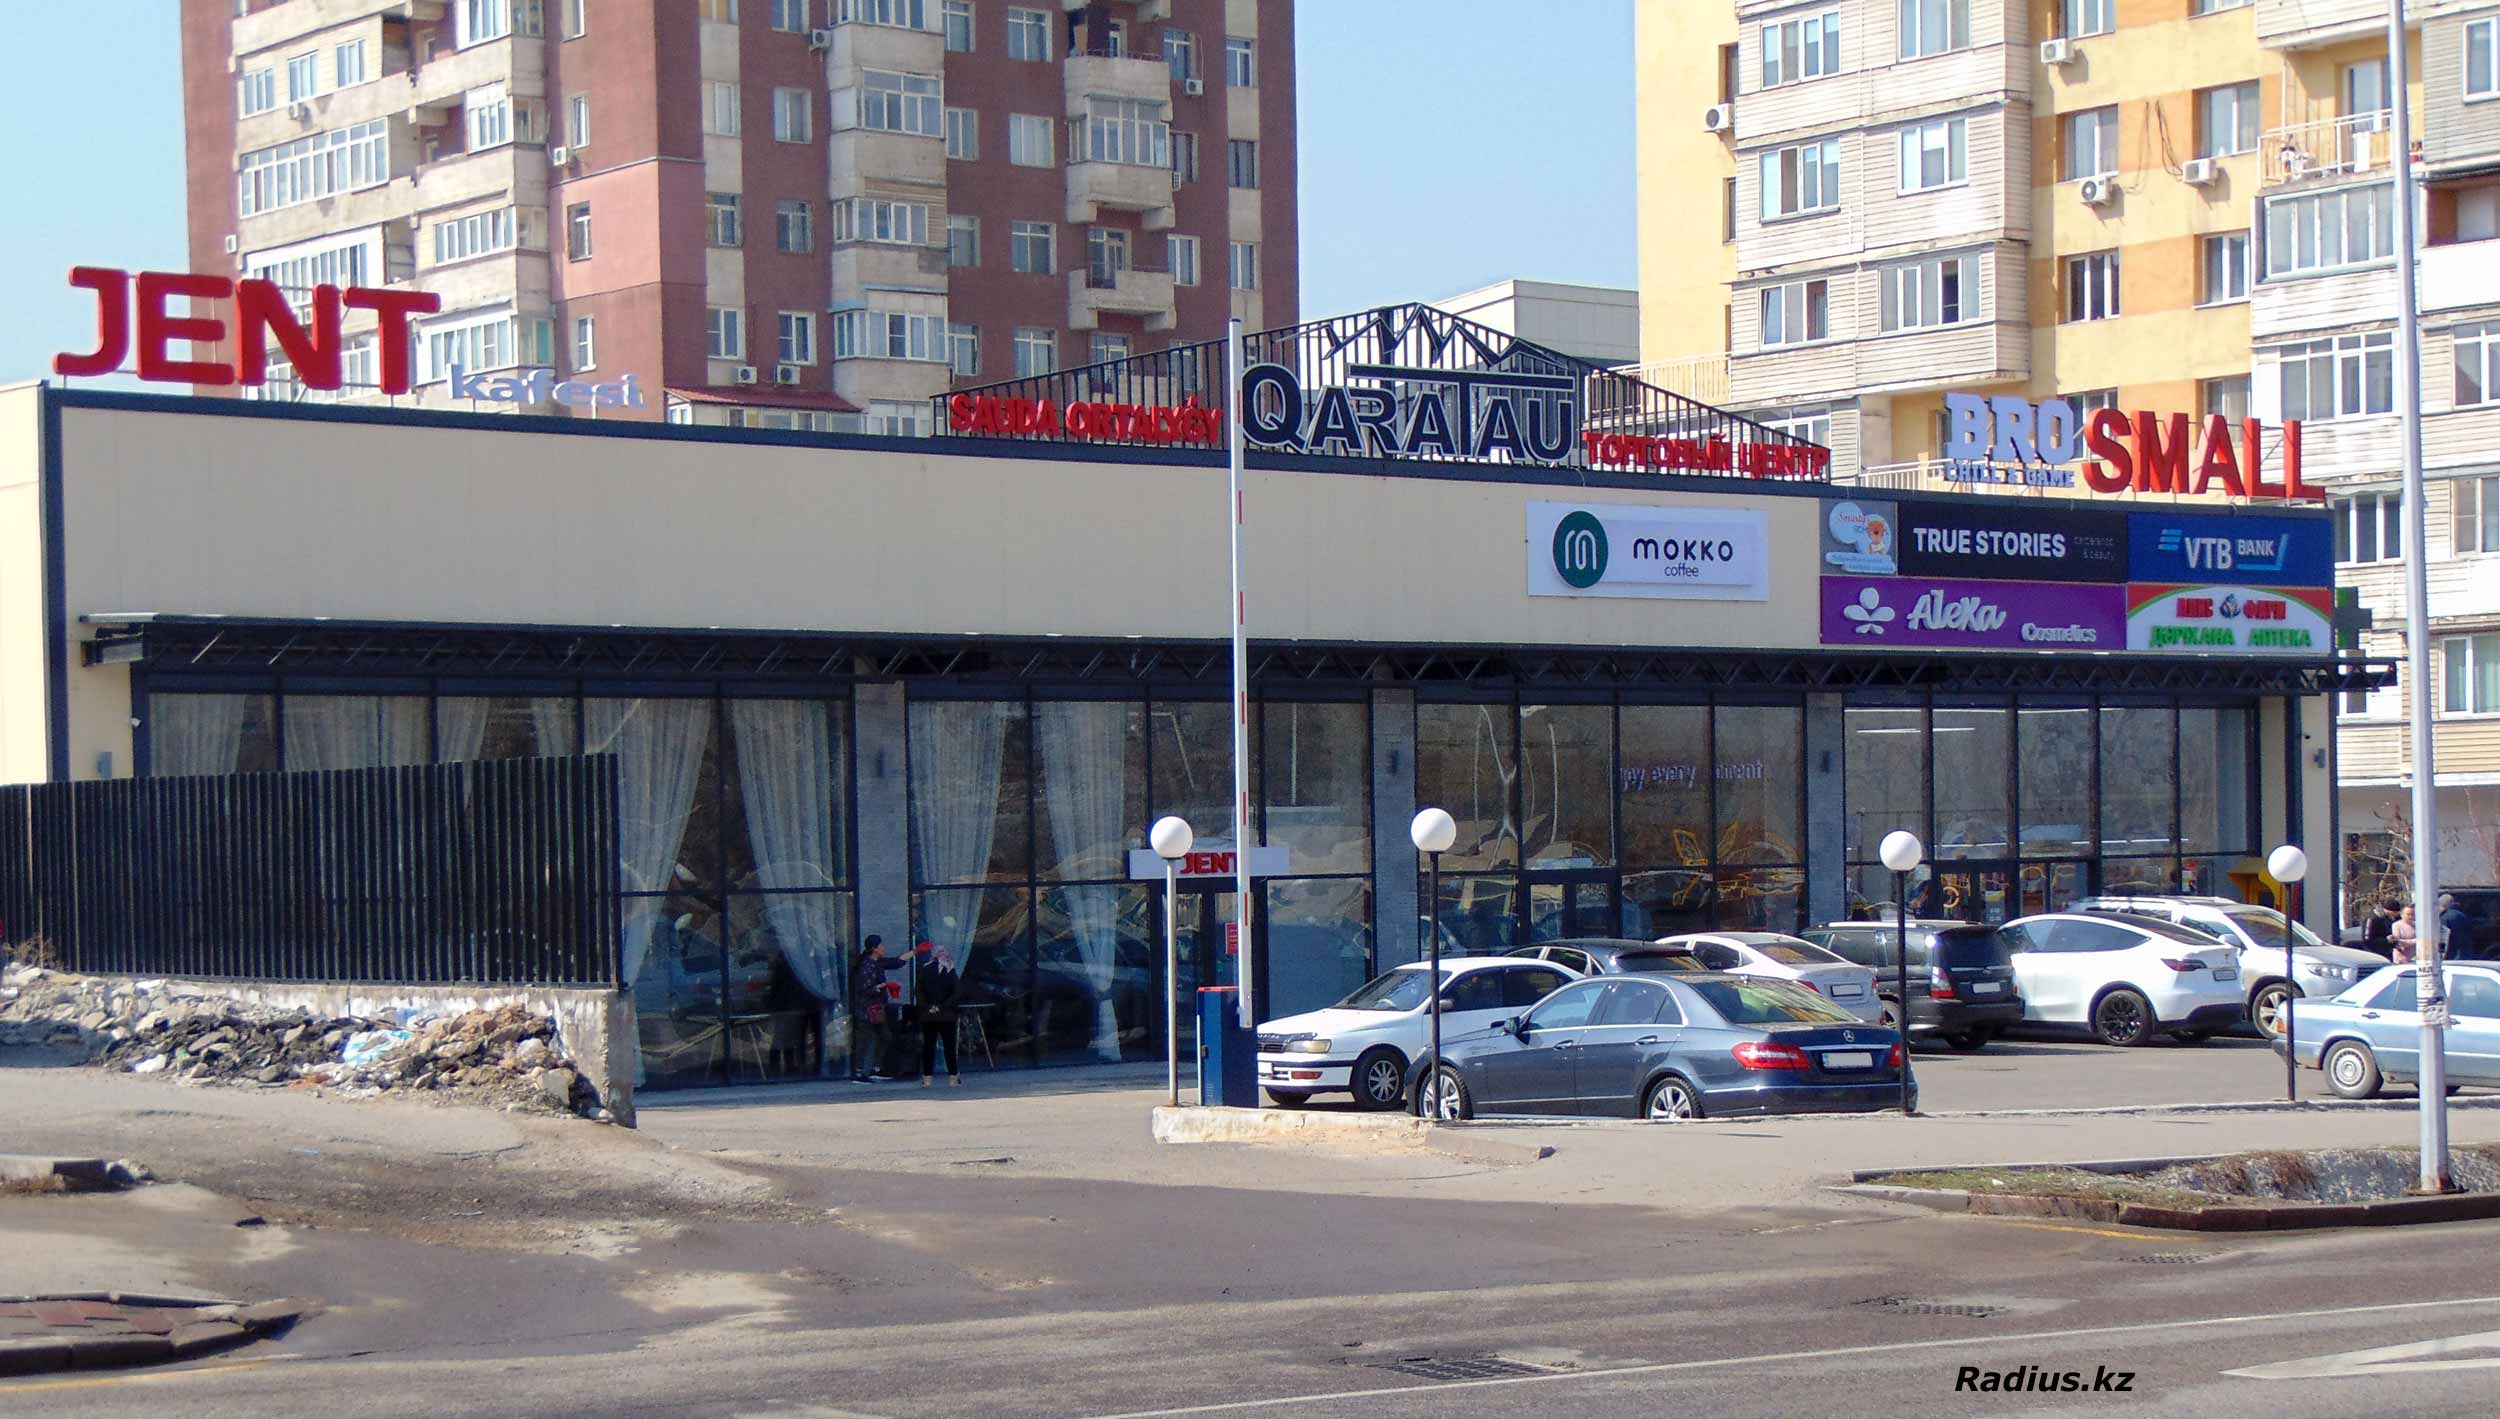 Алматы торговый дом QaraTau, кофейня JENT, супермаркет SMALL